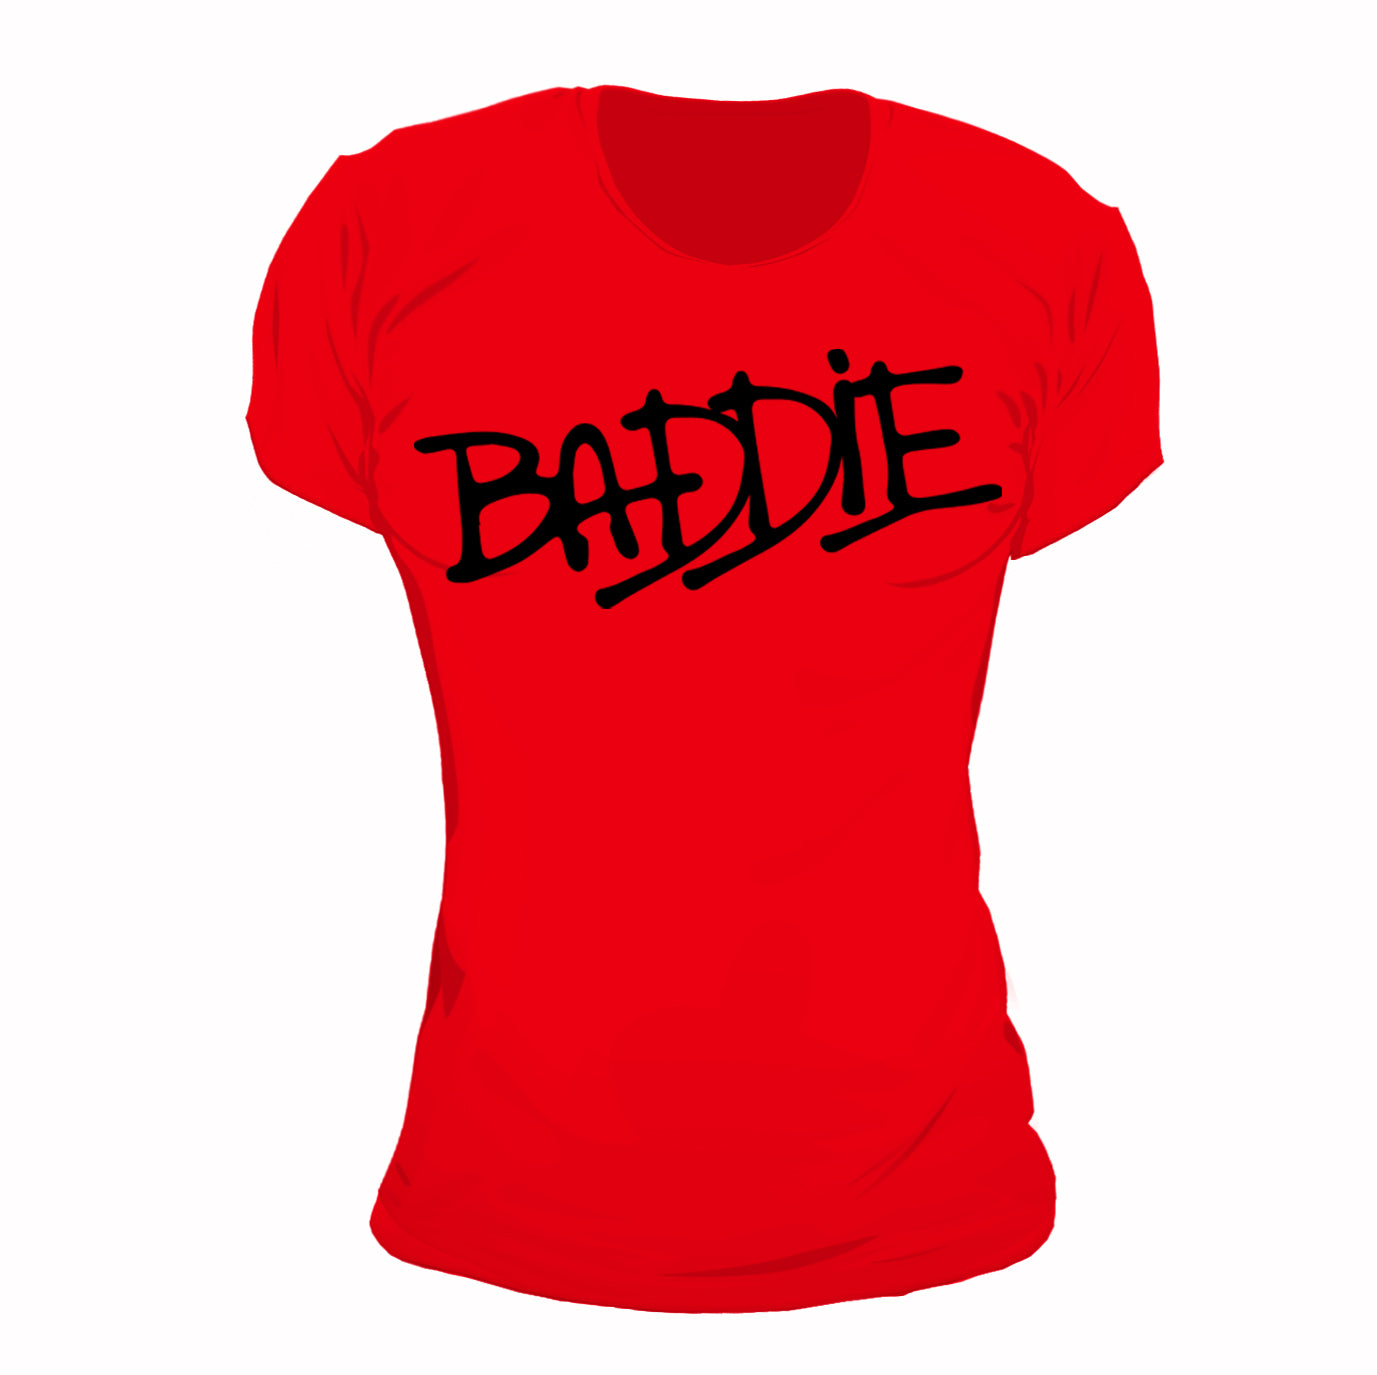 Baddie In Red Haute